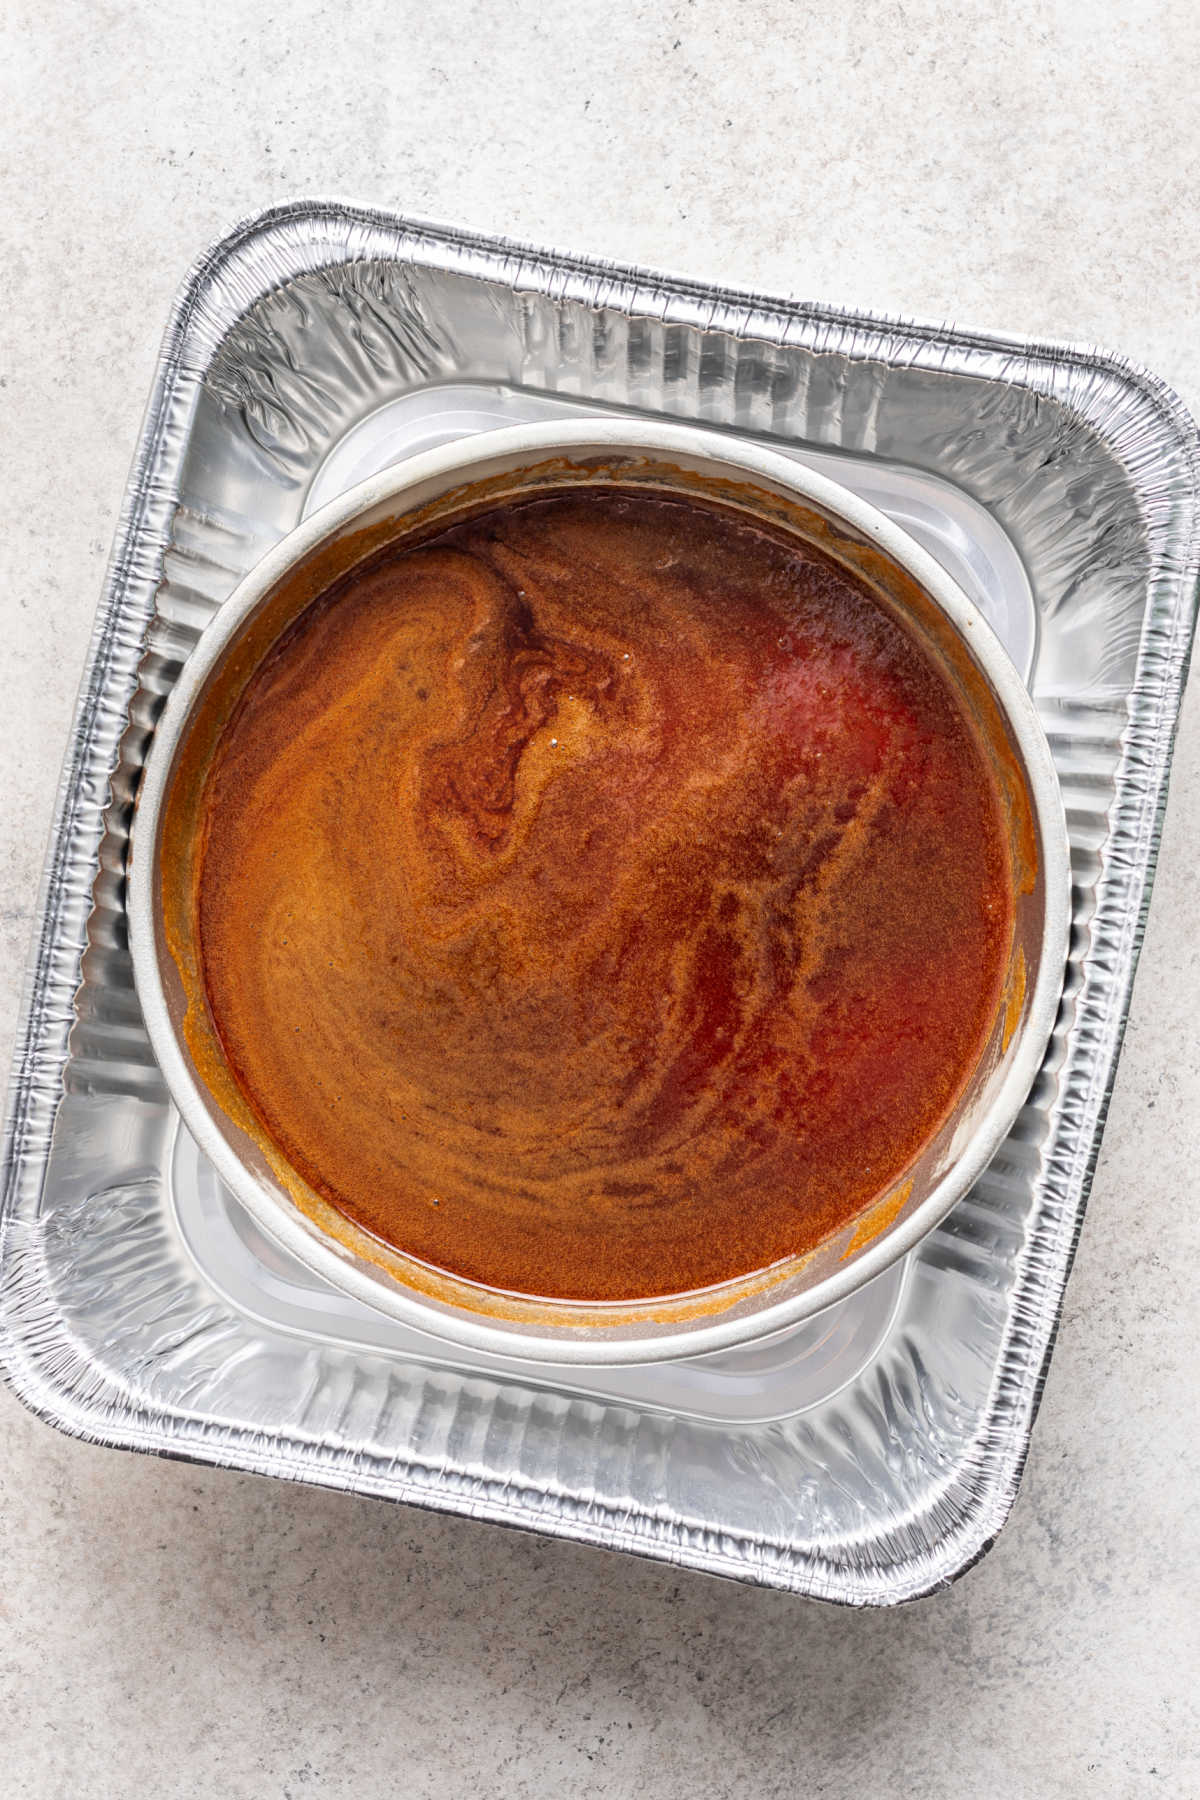 Caramel in a round cake pan.